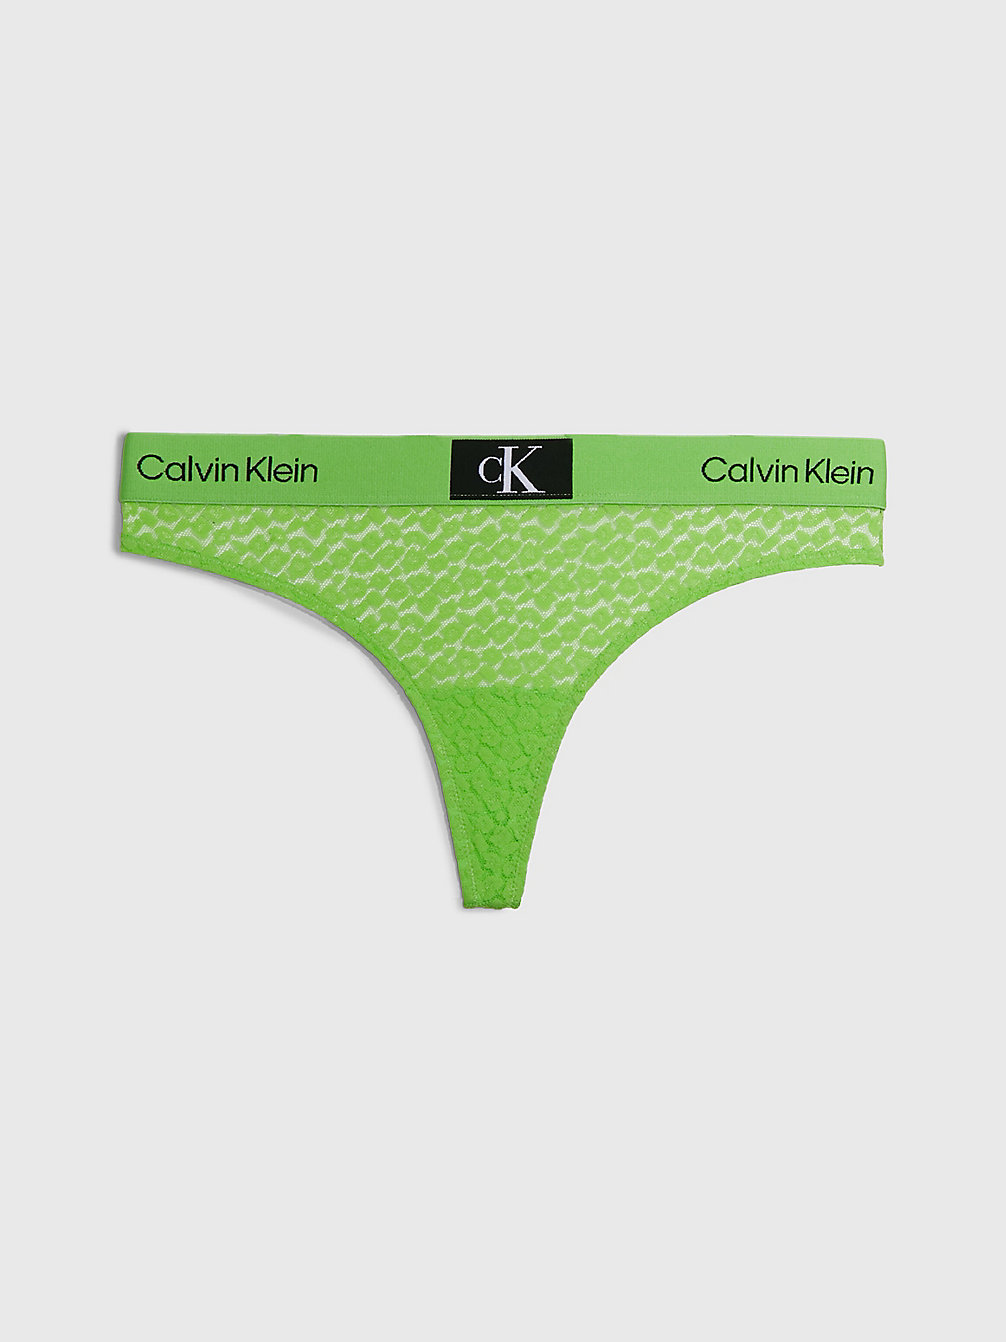 FABULOUS GREEN > Koronkowe Stringi - Ck96 > undefined Kobiety - Calvin Klein